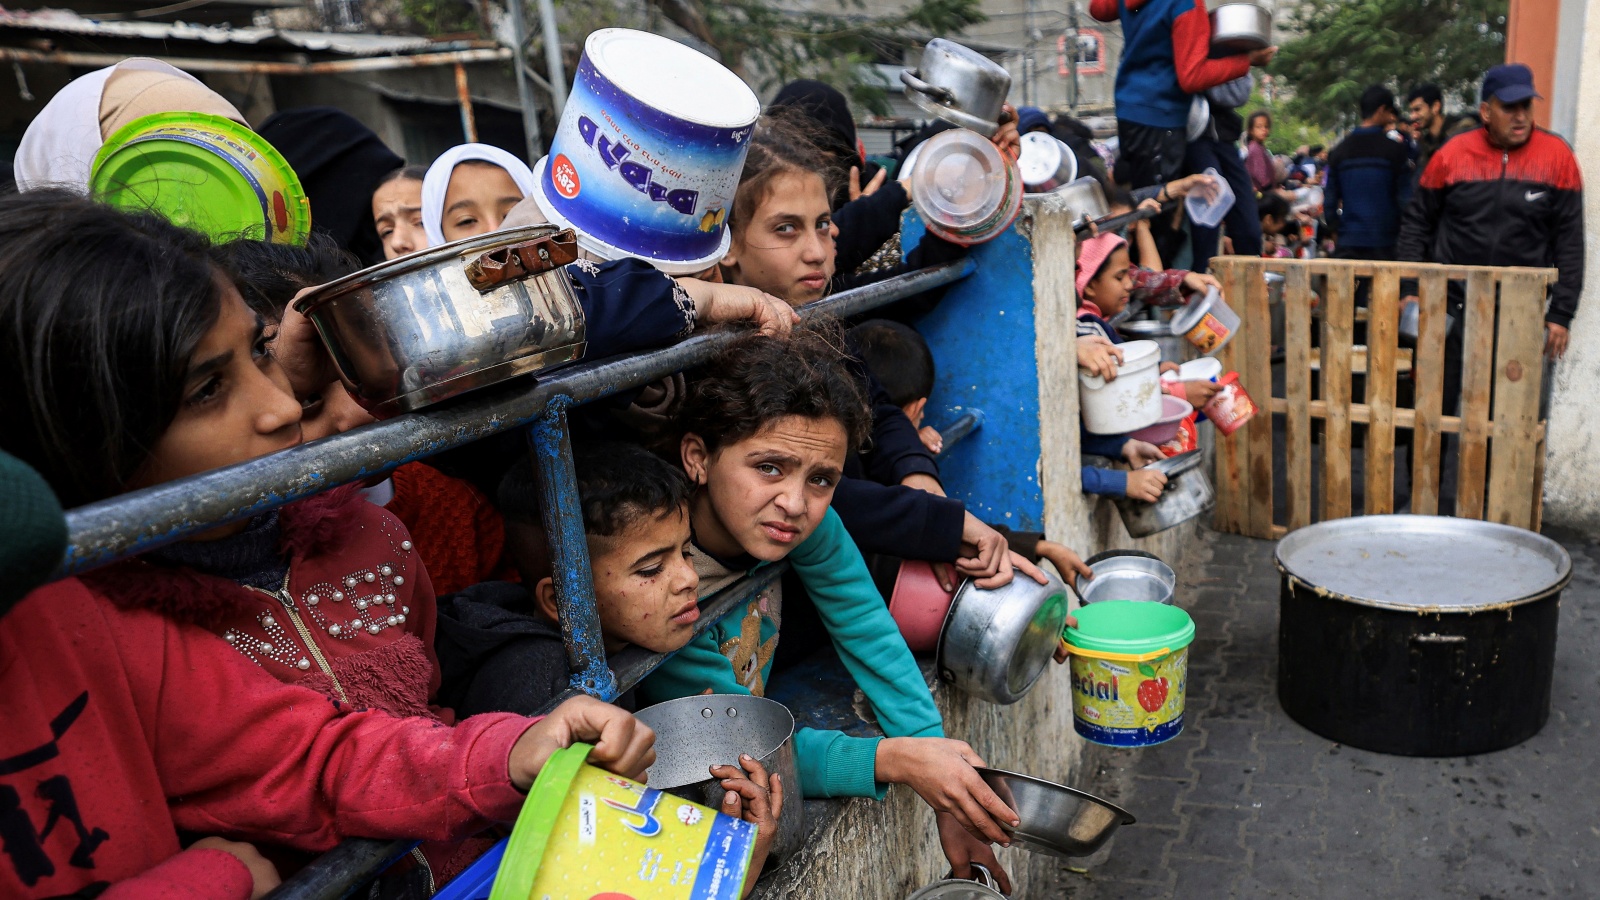 إسرائيل نفت بشدة المزاعم بأنها مسؤولة عن نقص الغذاء في غزة